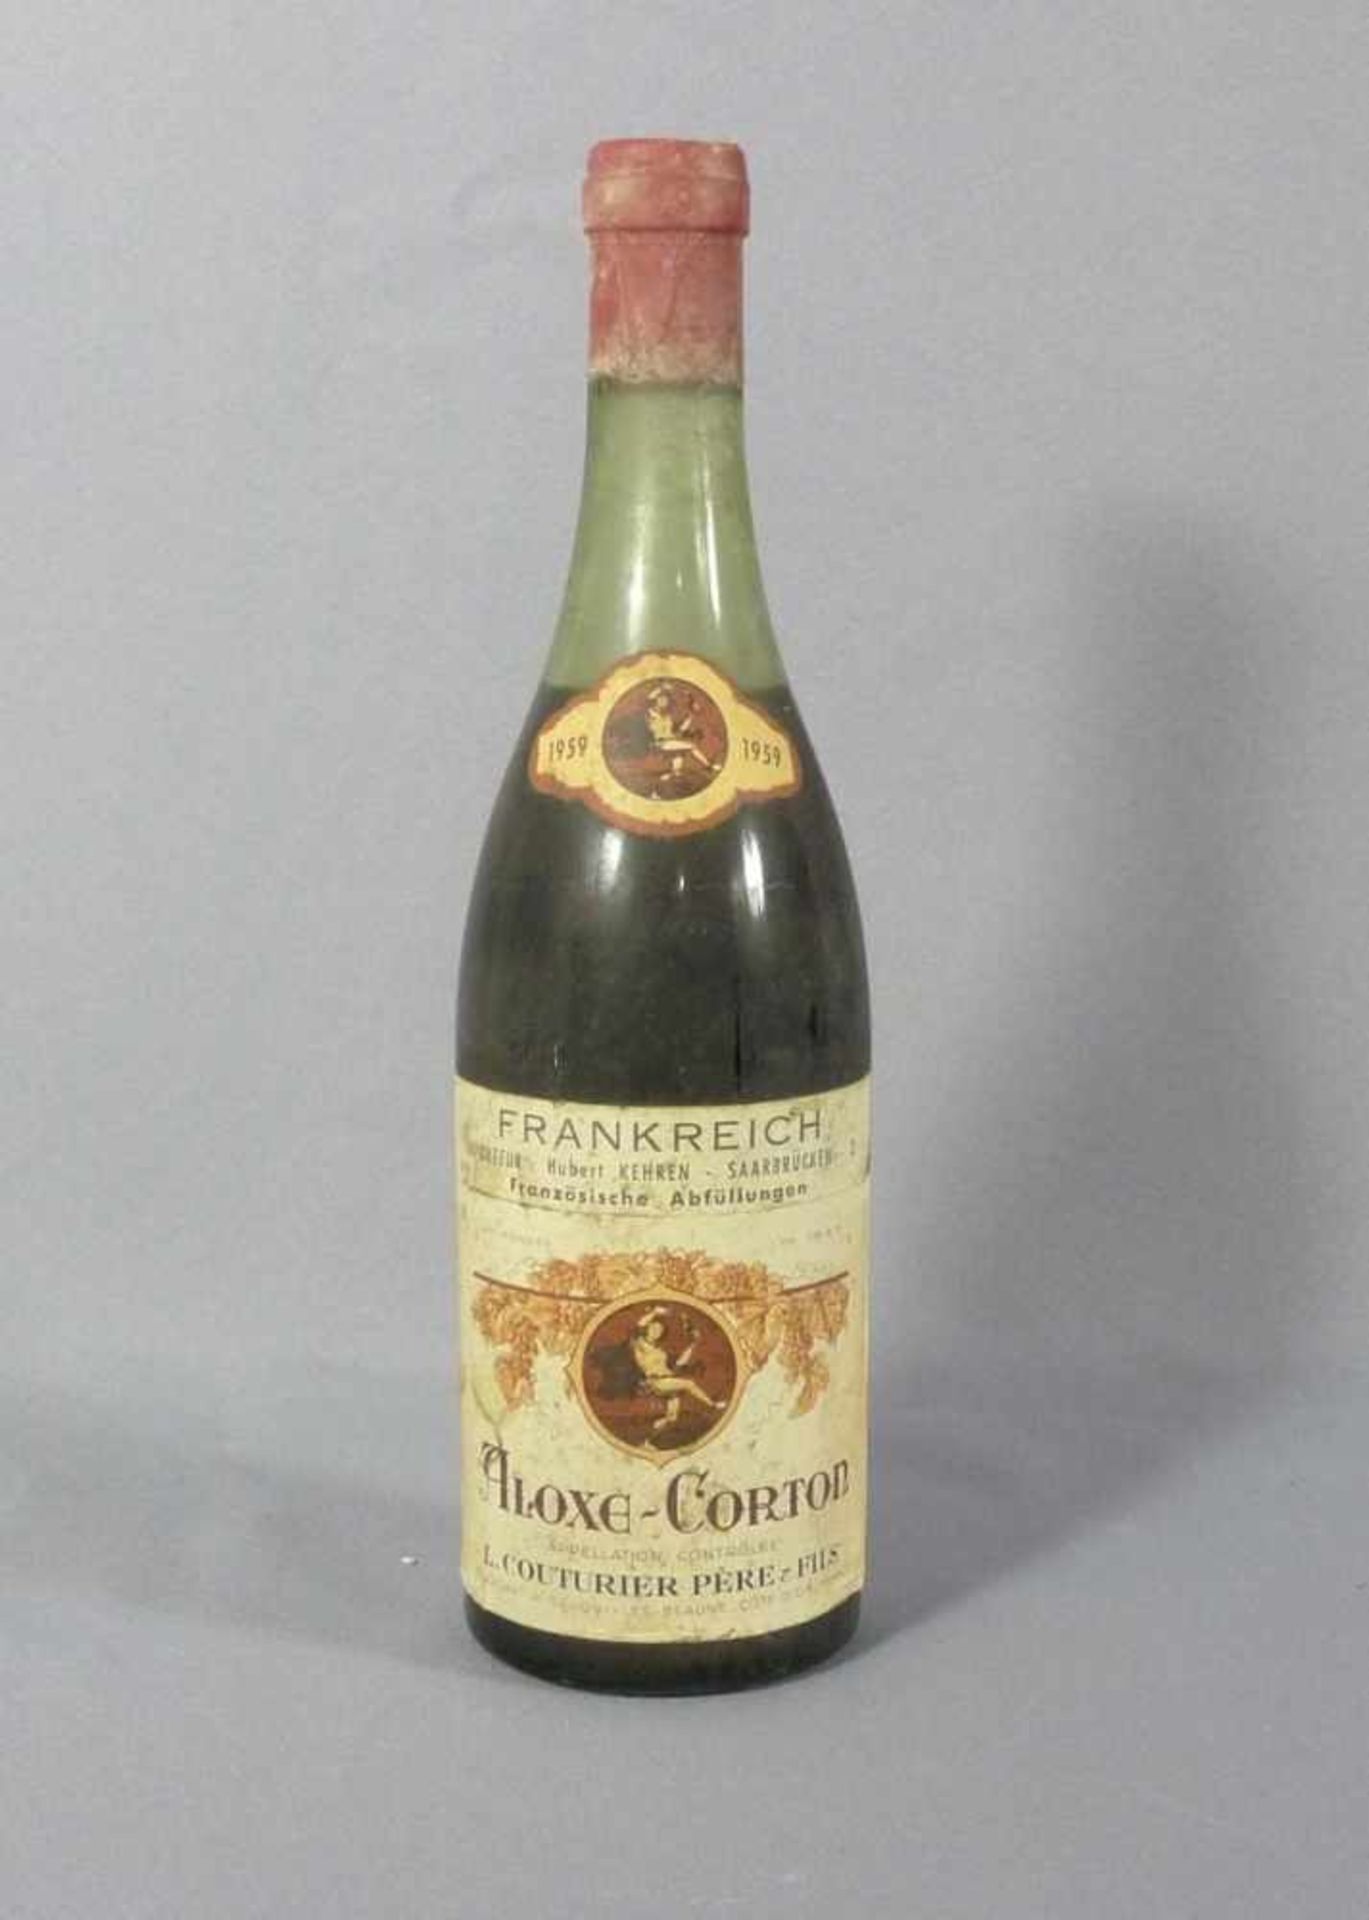 L. Couturier Père & FilsBurgundEine Flasche Aloxe-Corton von 1959, rote Kapsel. - Stark verschmutzt,